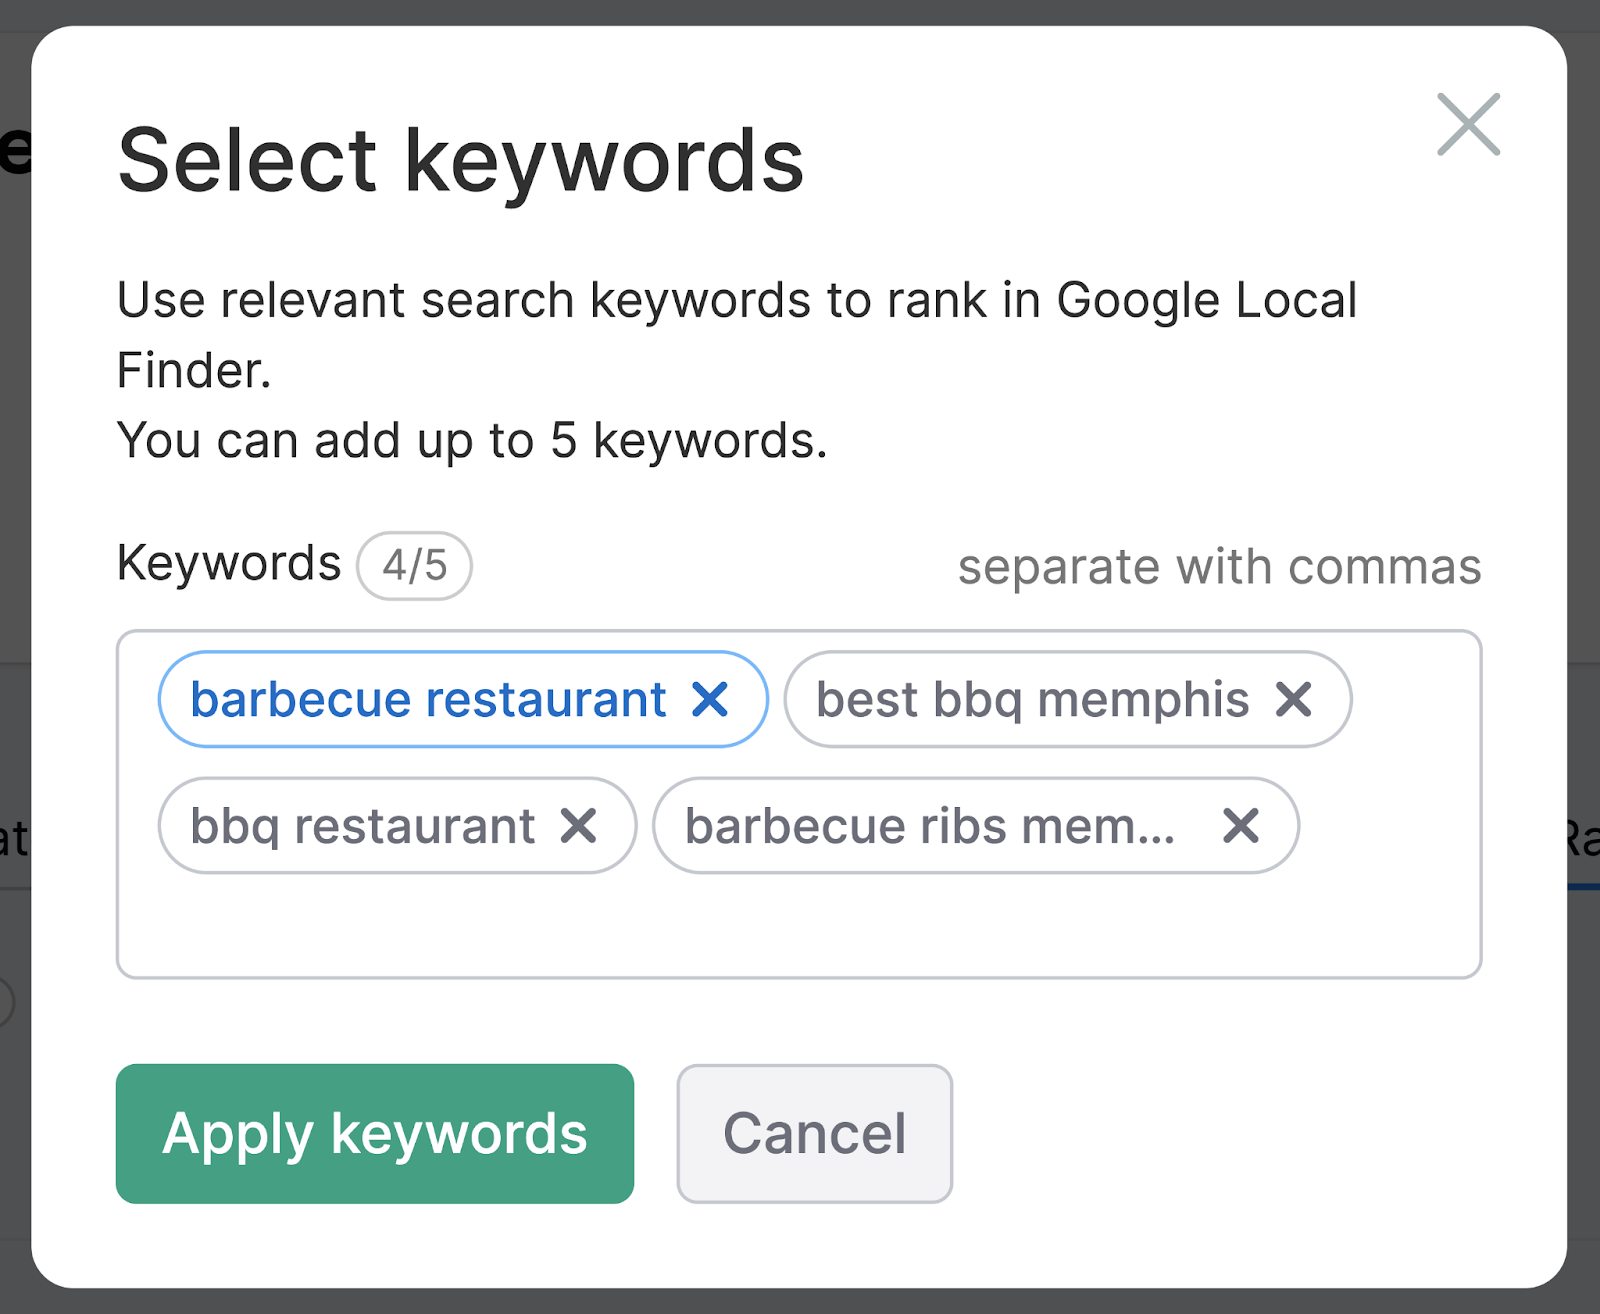 Select keywords page